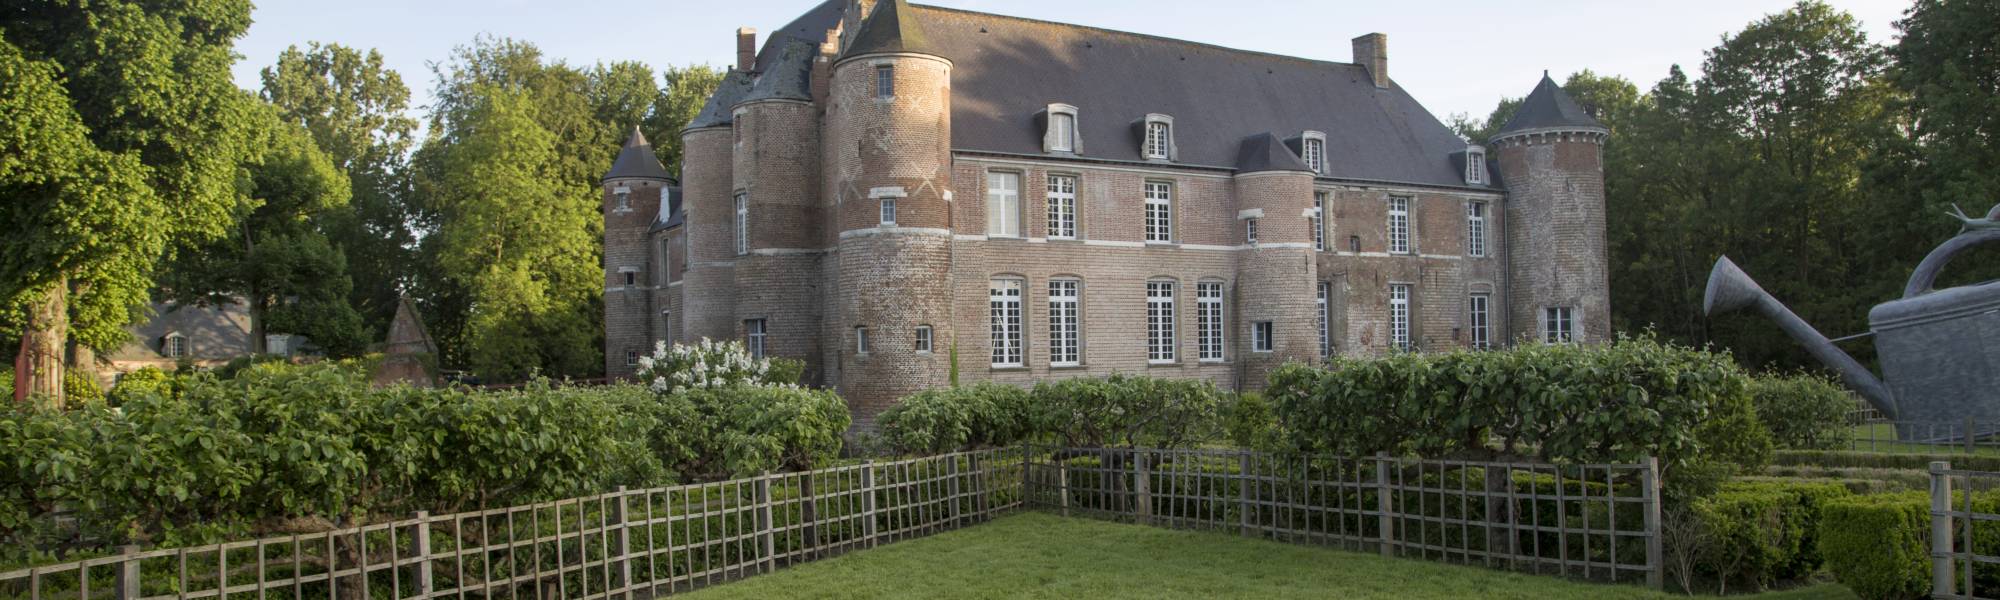 Chateau Esquelbecq 2019 (2).jpg